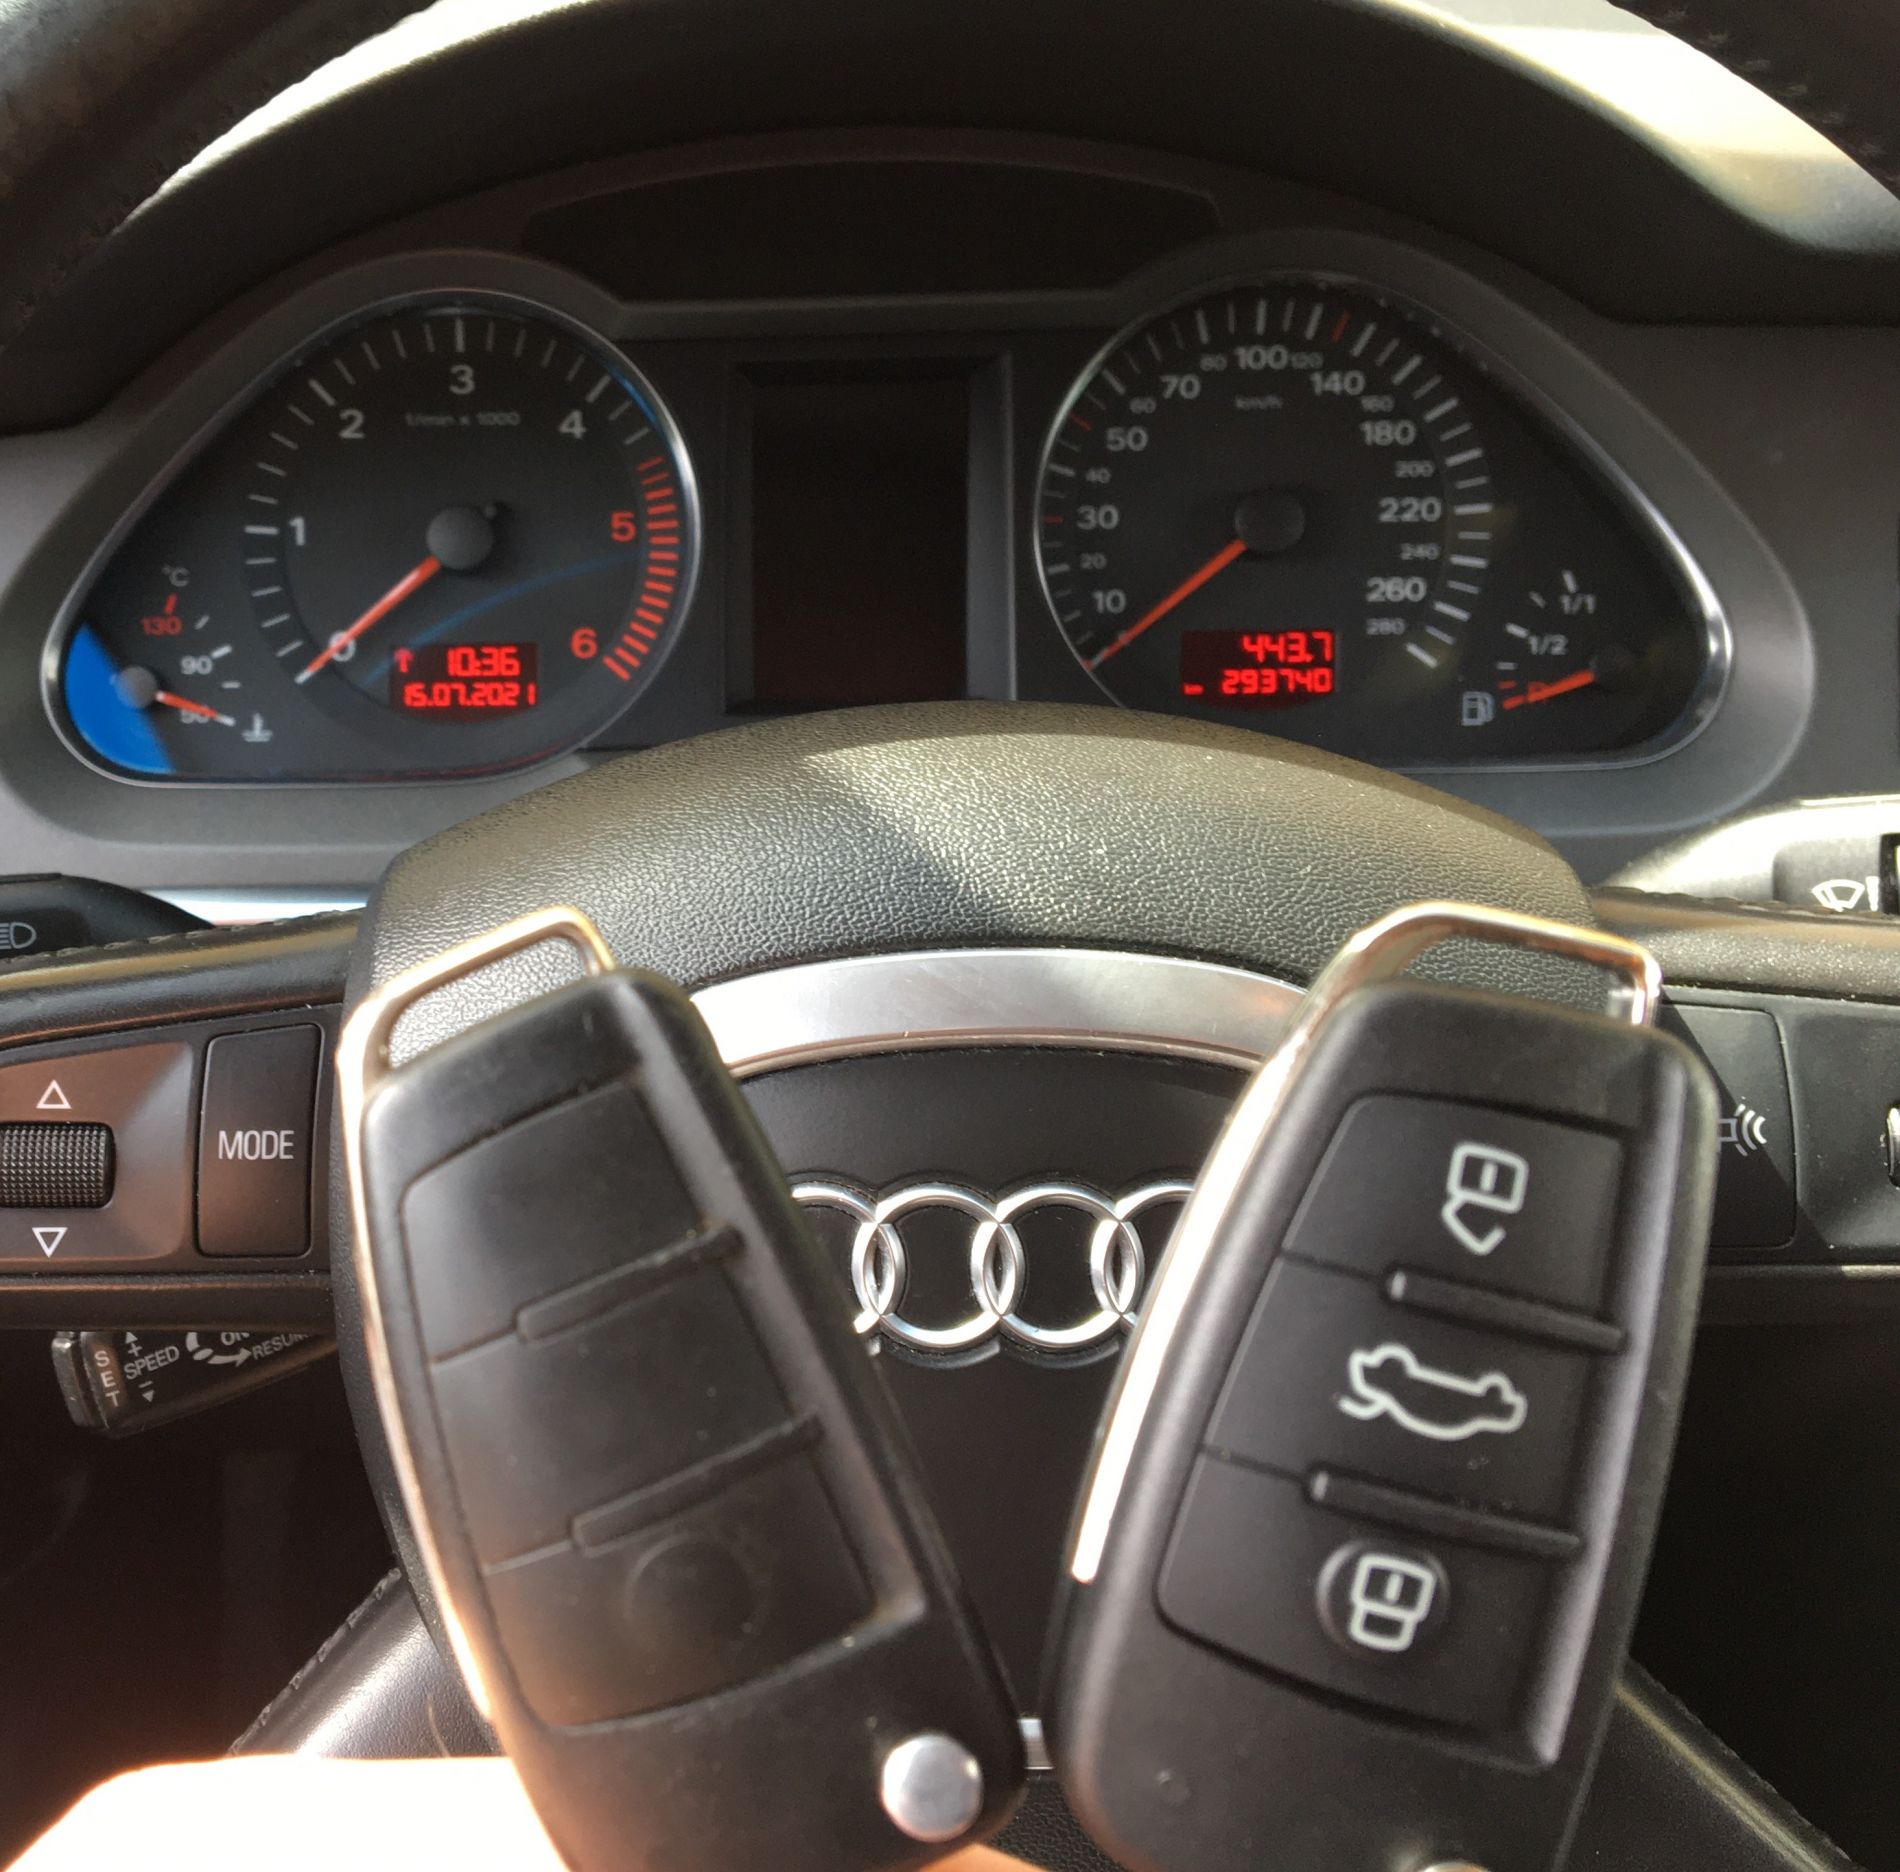 Programowanie zapasowego klucza do Audi A6 z 2008 roku.